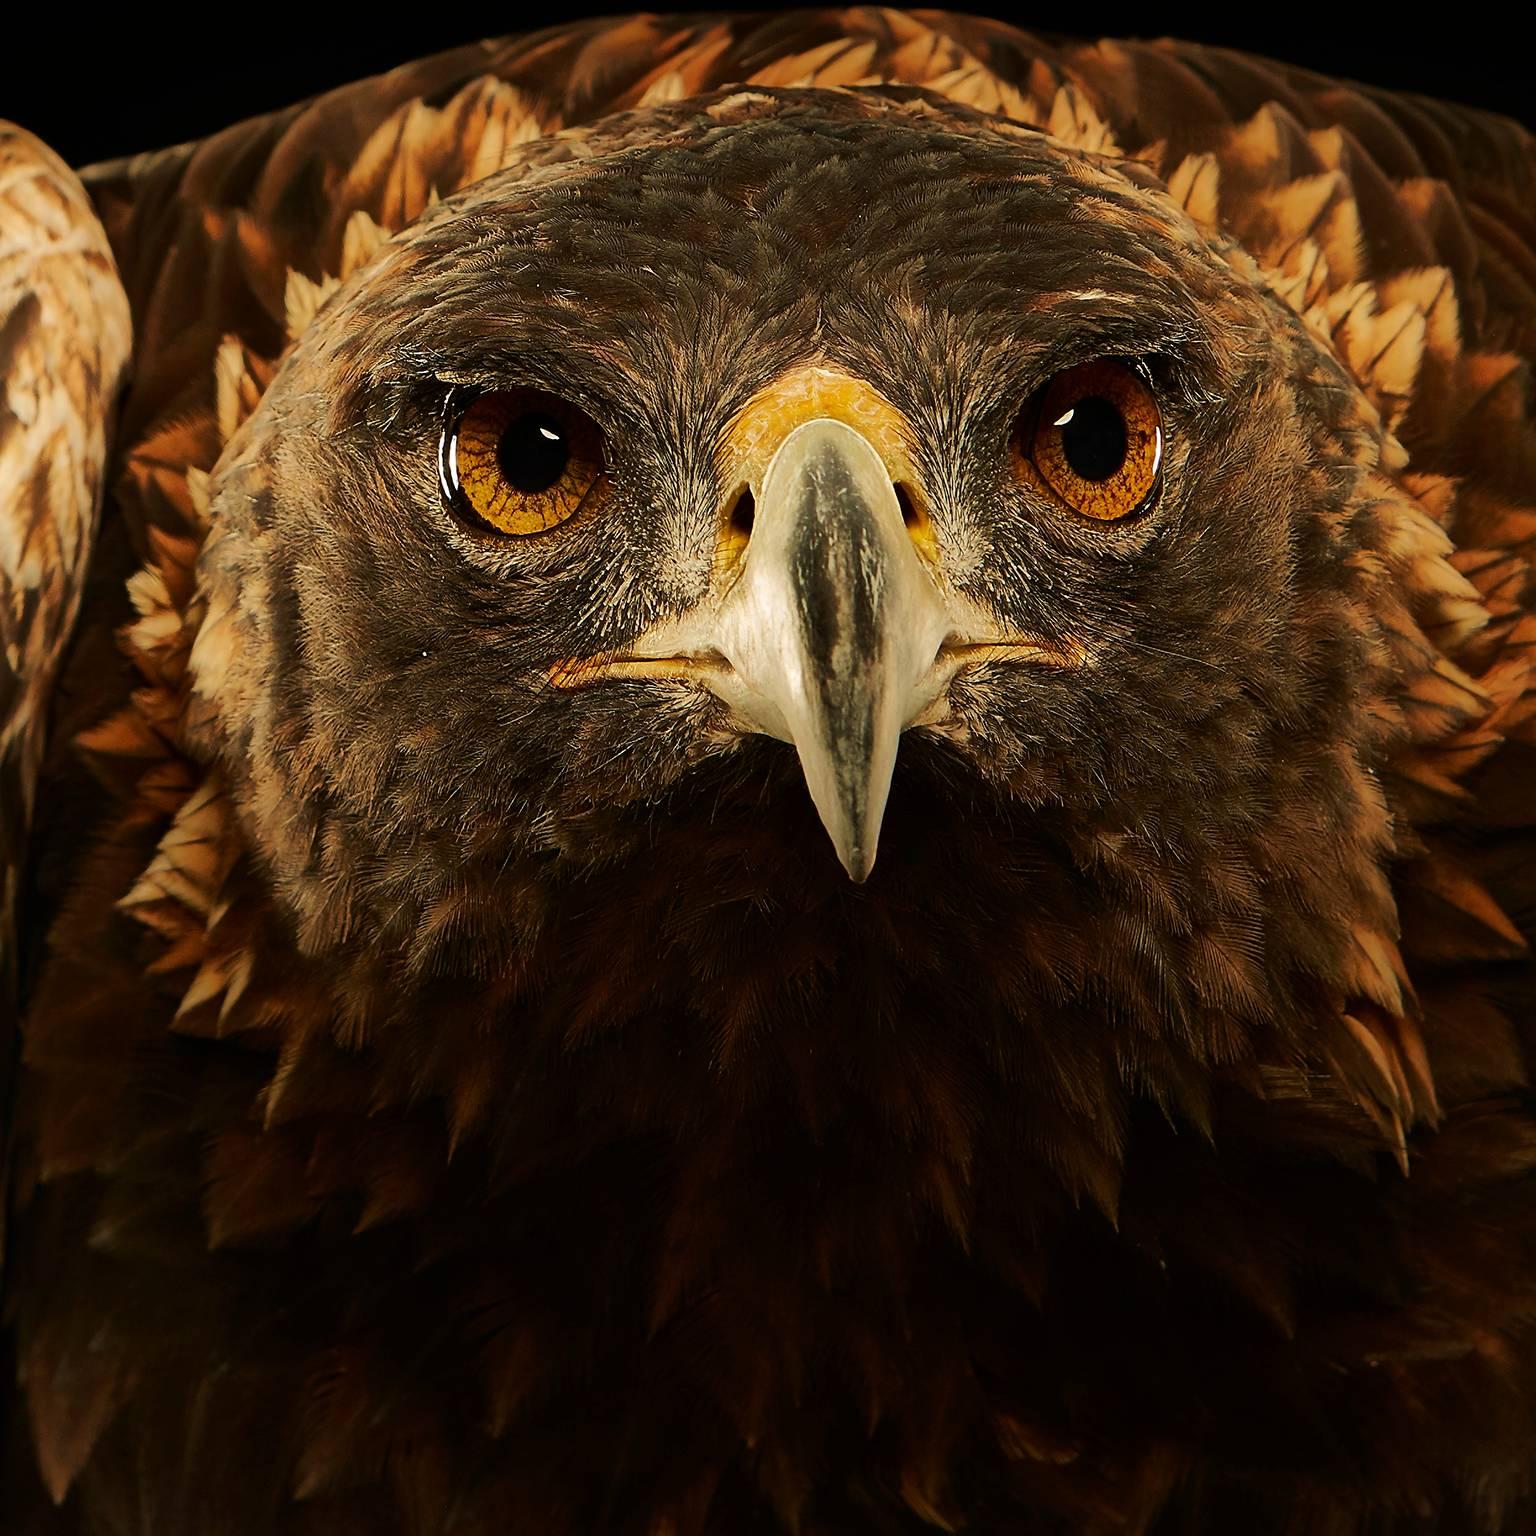 Birds of Prey - Golden Eagle No. 20 - Photograph by Chris Gordaneer